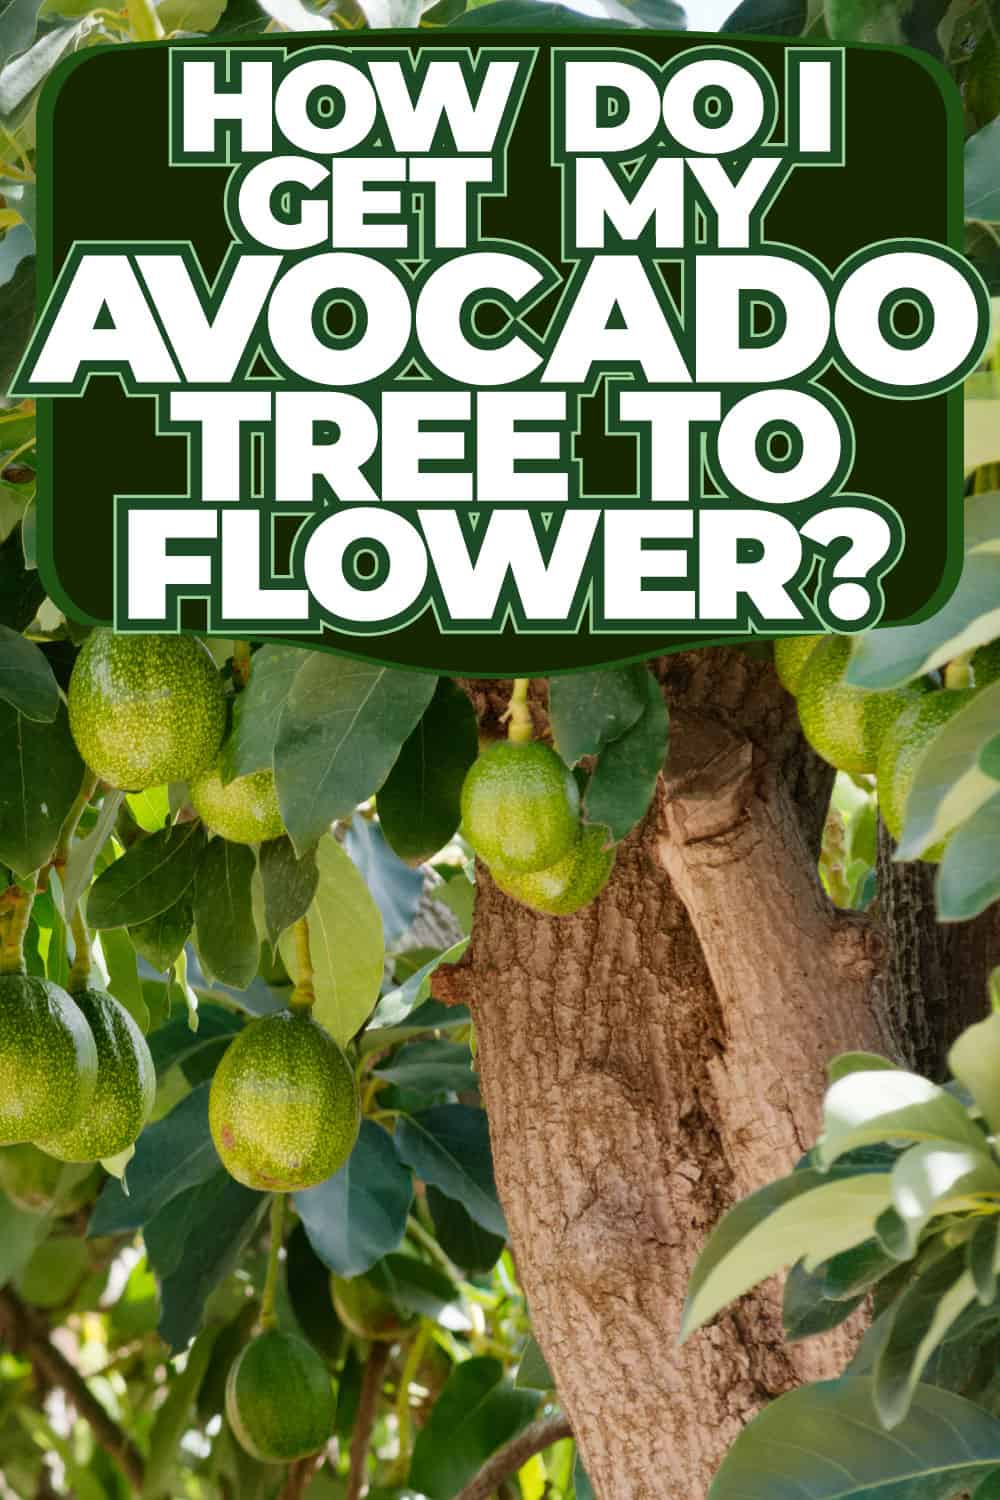 How Do I Get My Avocado Tree To Flower?